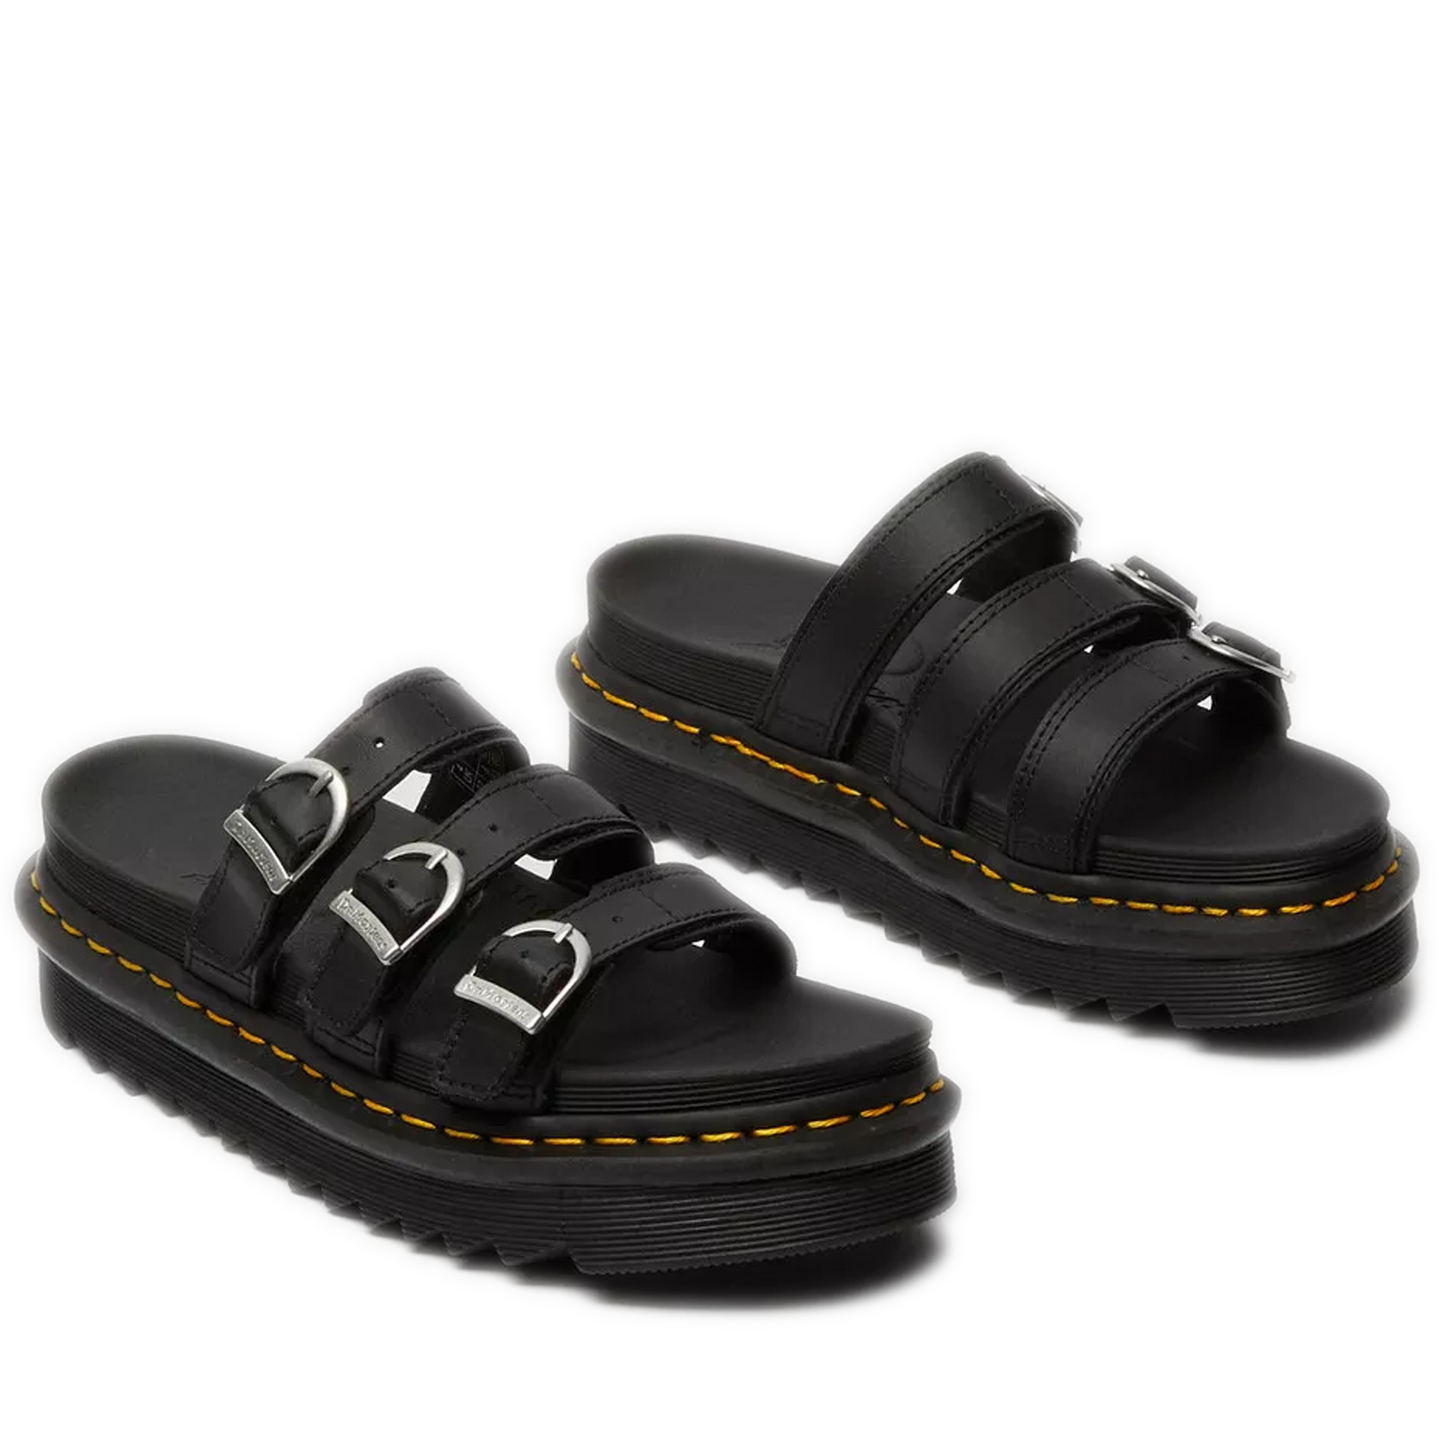 Women's Dr. Martens Blaire Leather Slide Sandals - Black Hydro